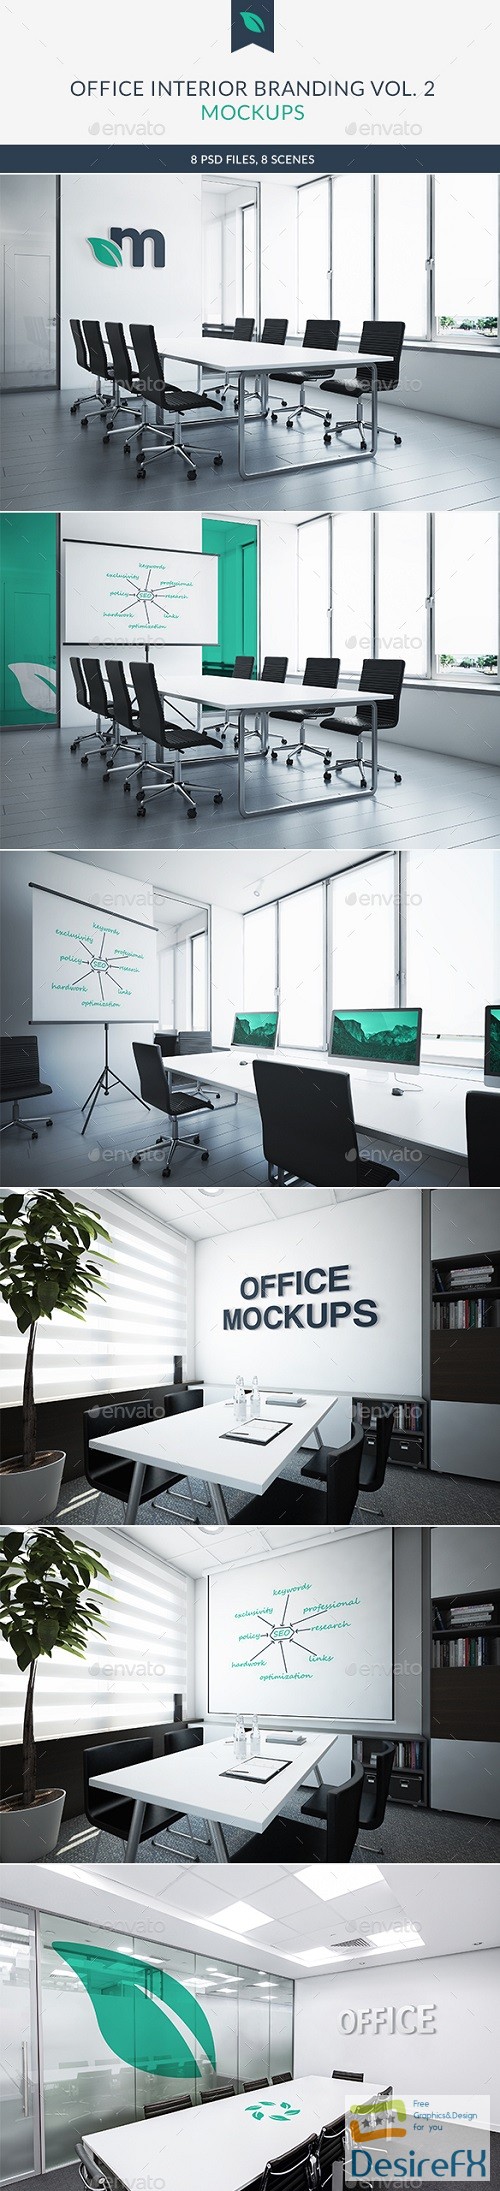 Download Desirefx.com | Download Office Interior Branding Mockups Vol2...